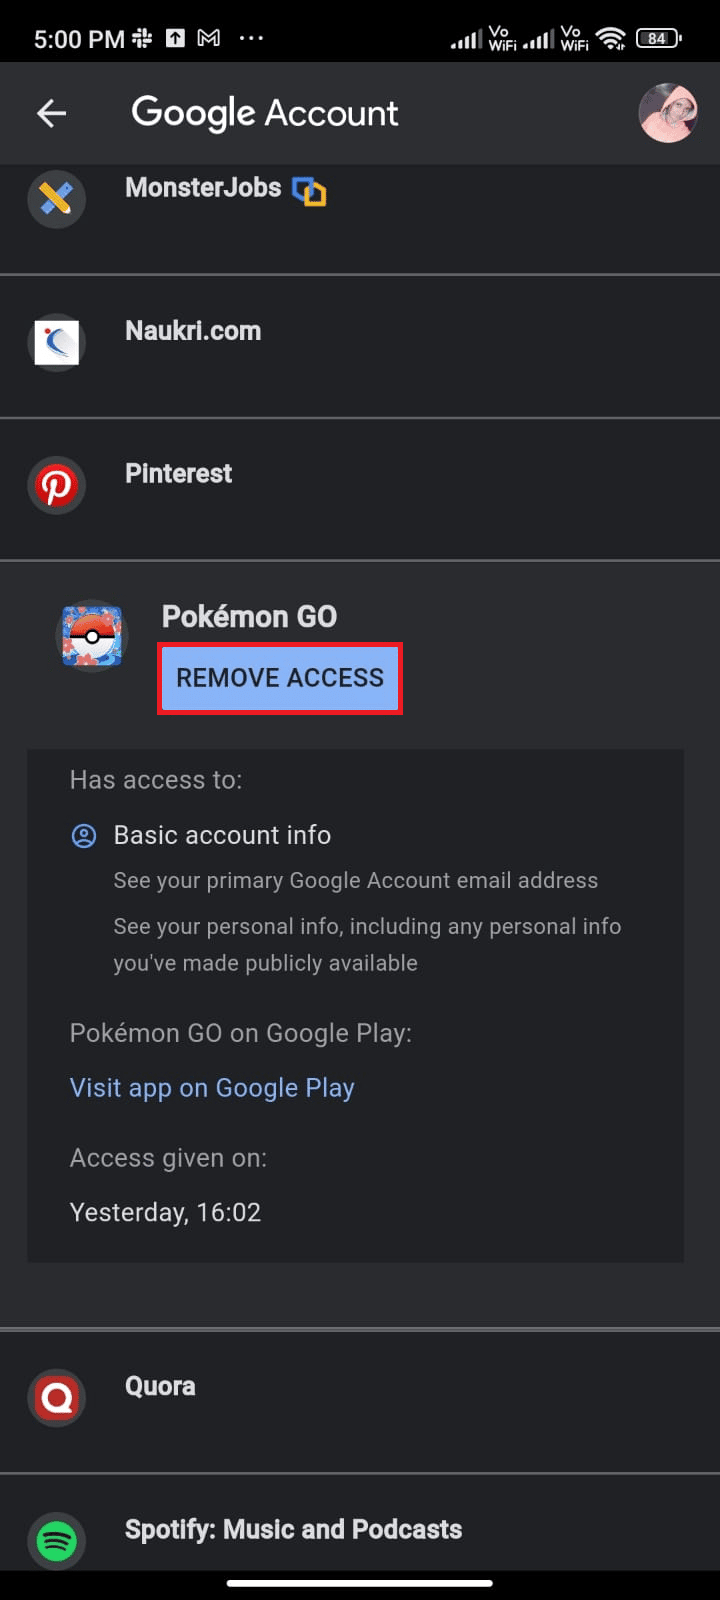 Теперь прокрутите вниз до следующего экрана и нажмите «УДАЛИТЬ ДОСТУП», соответствующий Pokémon Go. Исправлена ​​ошибка, из-за которой не работала синхронизация приключений Pokémon Go.